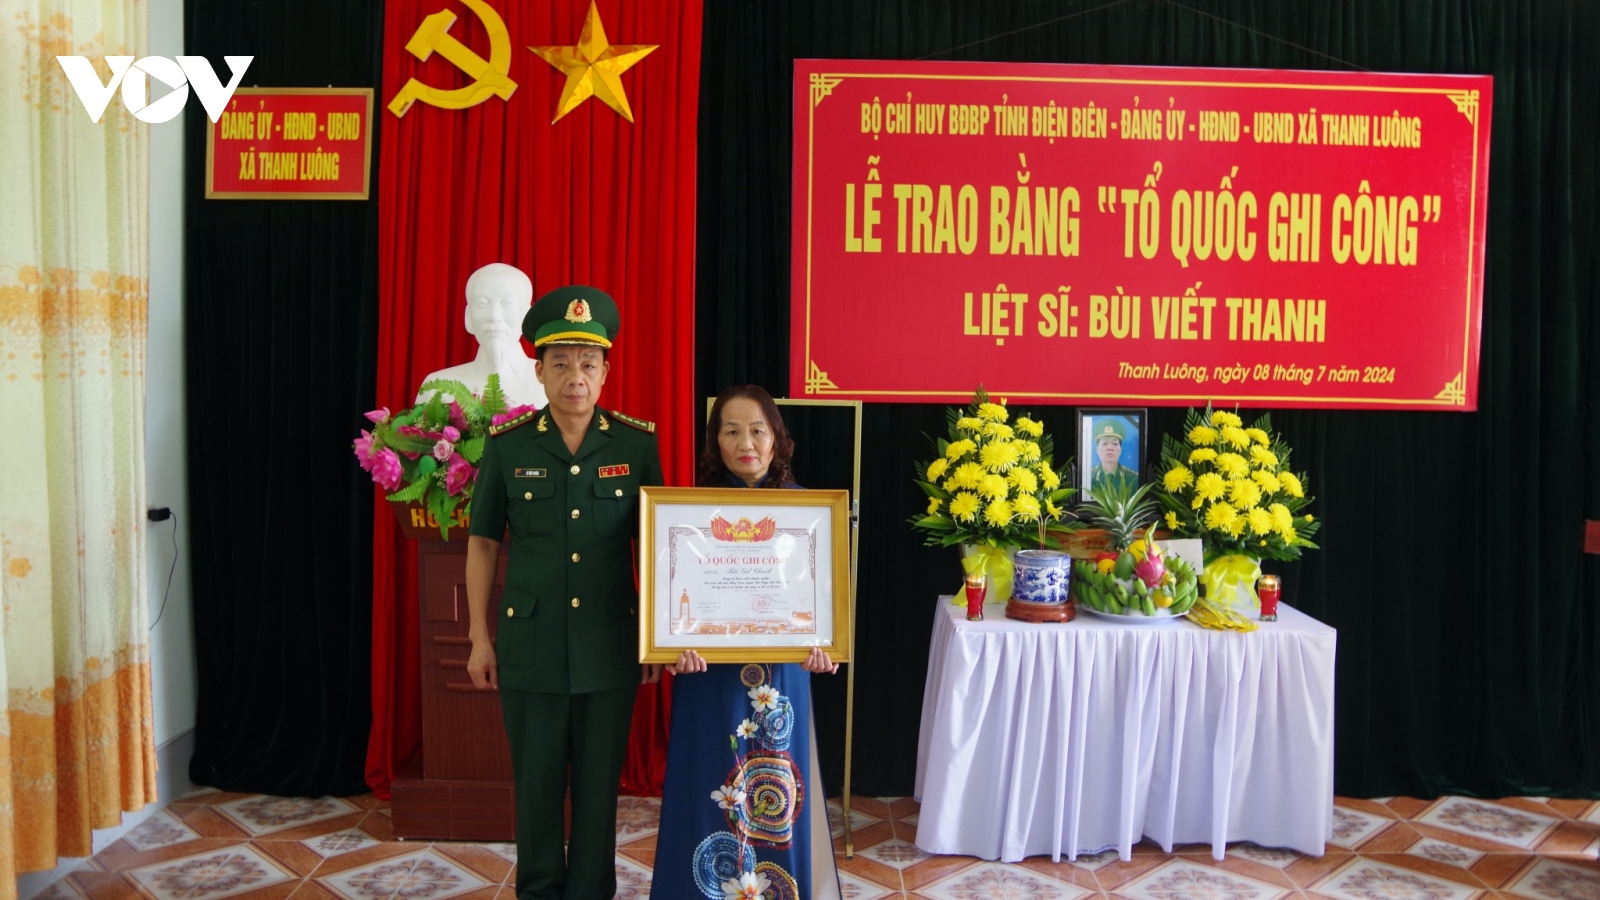 Trao Bằng "Tổ quốc ghi công" cho gia đình liệt sĩ Bùi Viết Thanh ở Điện Biên